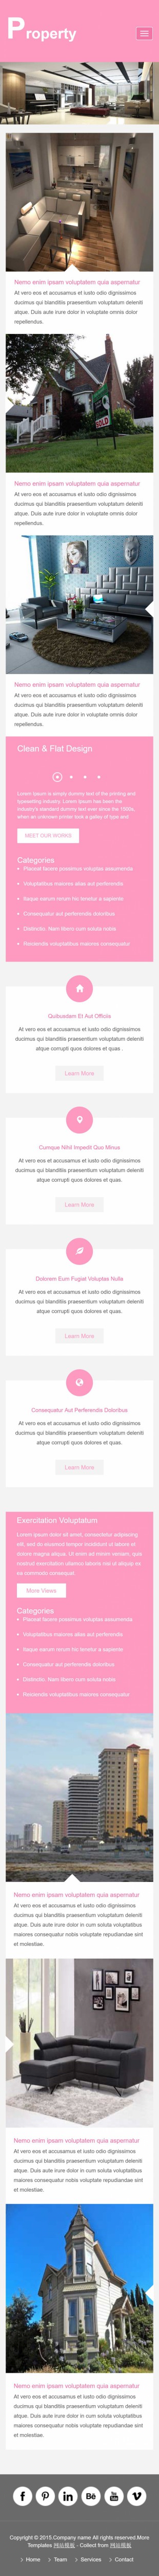 粉色扁平化大气别墅装修设计公司英文网站制作模板手机图片